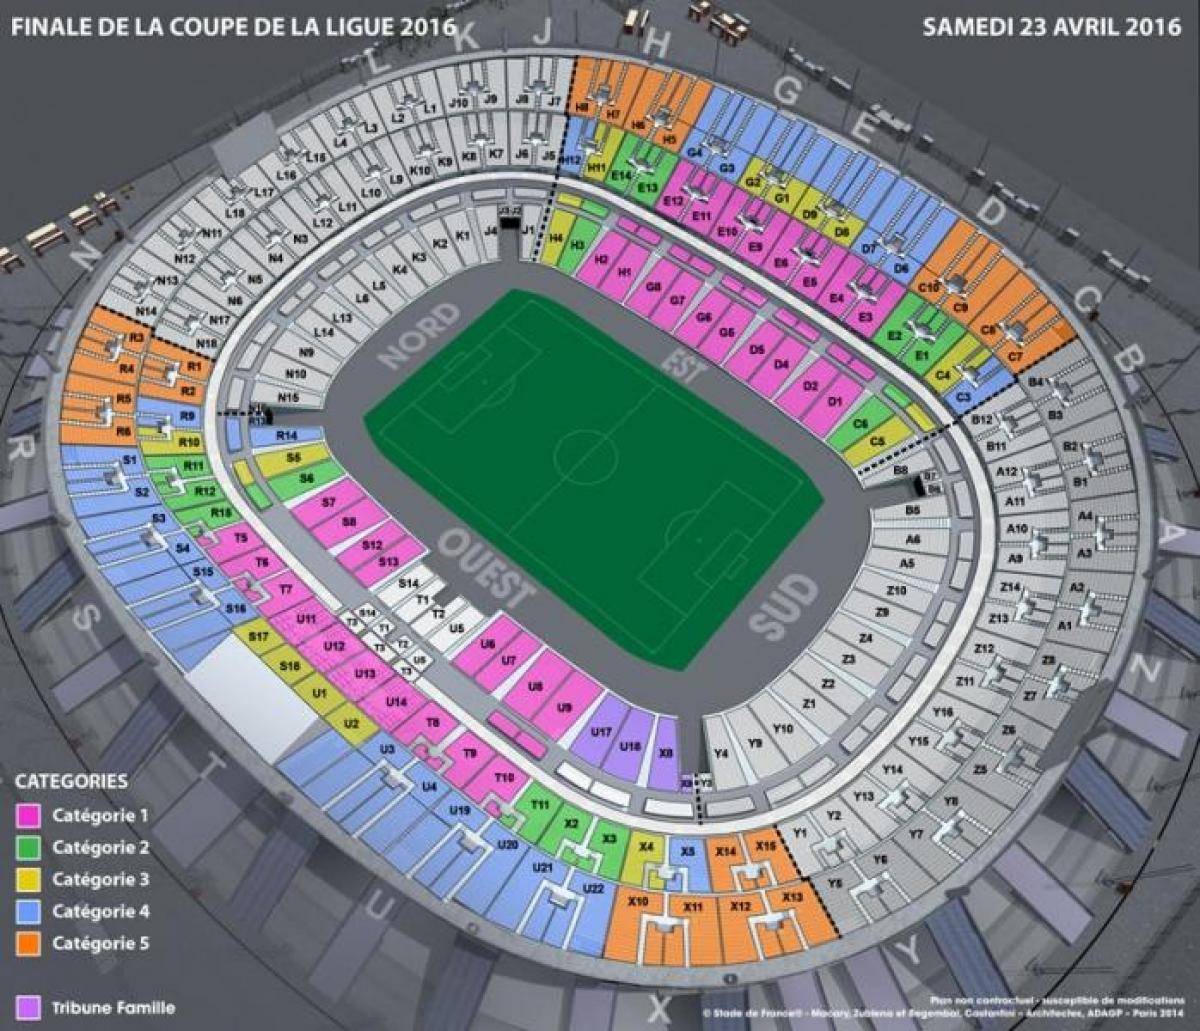 Mapa do Stade de France (estádio de Futebol